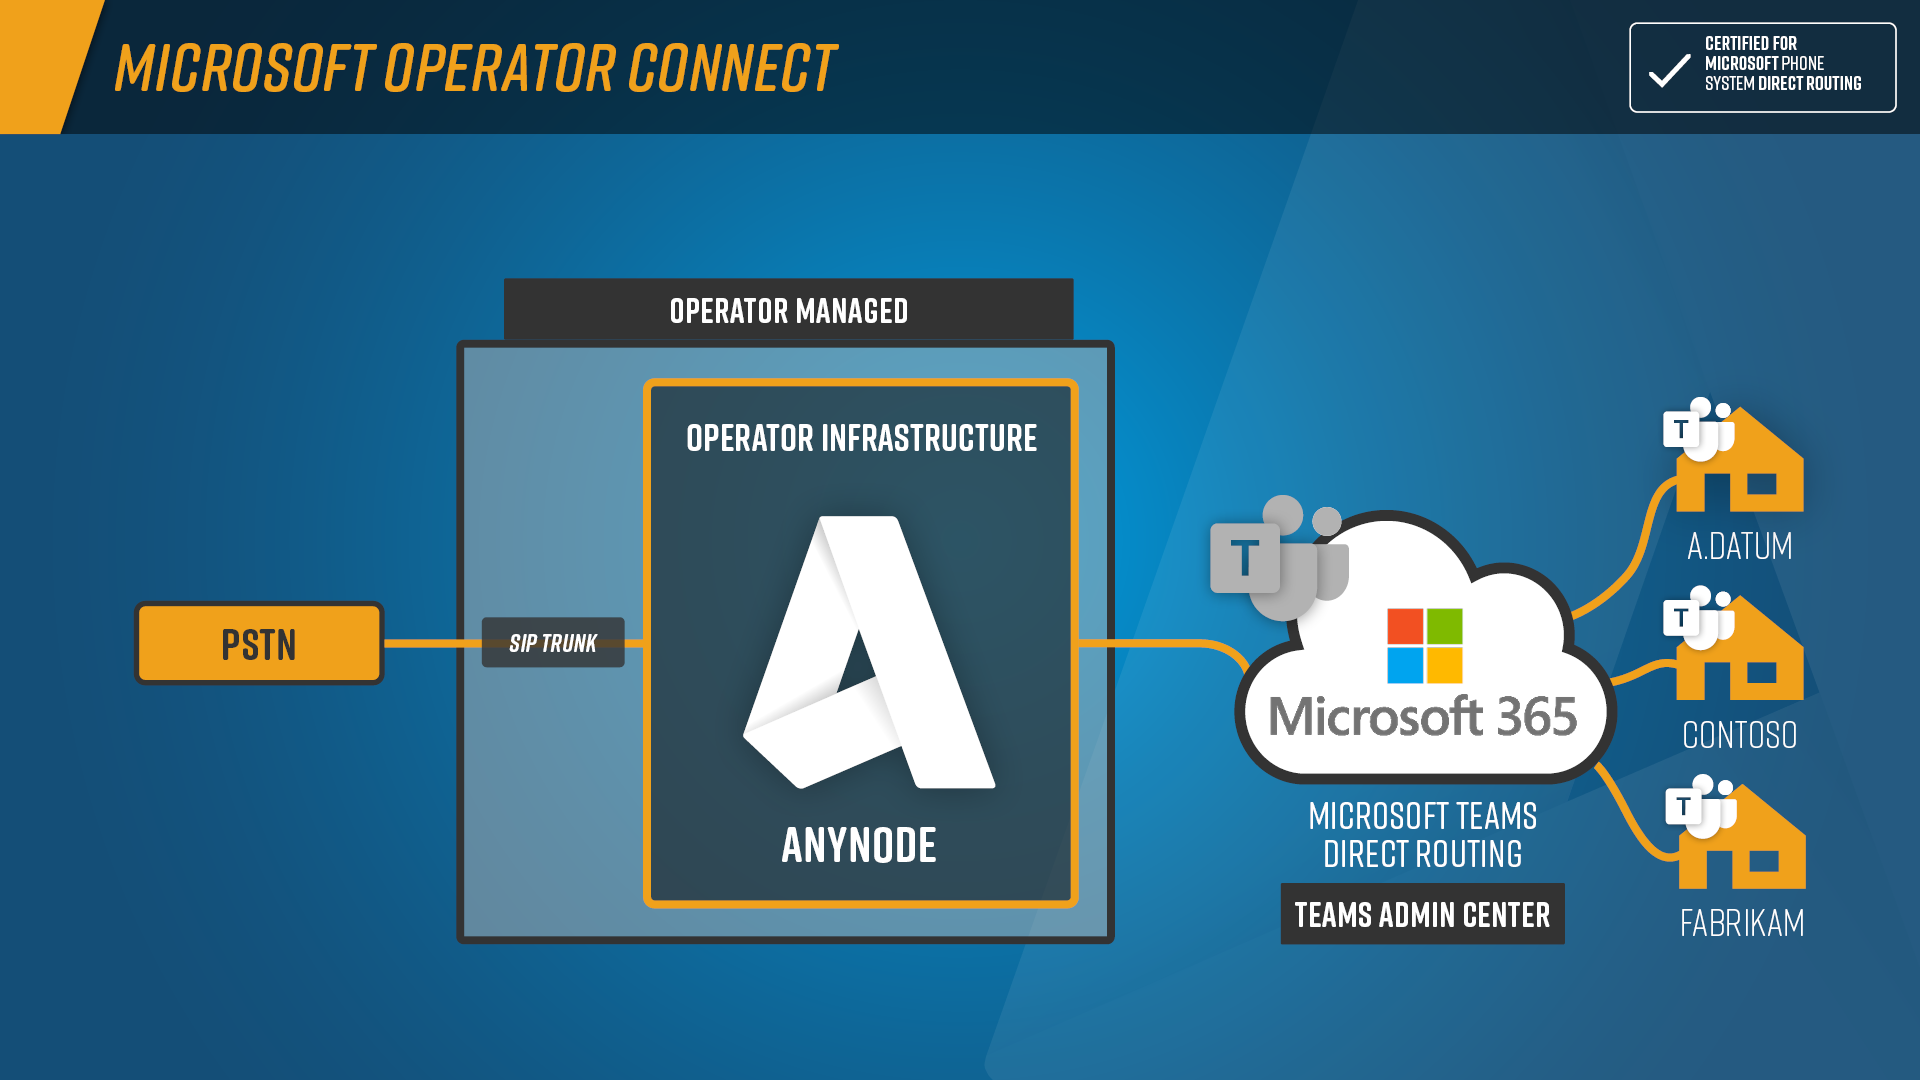 Schaubild Microsoft Operator Connect mit anynode